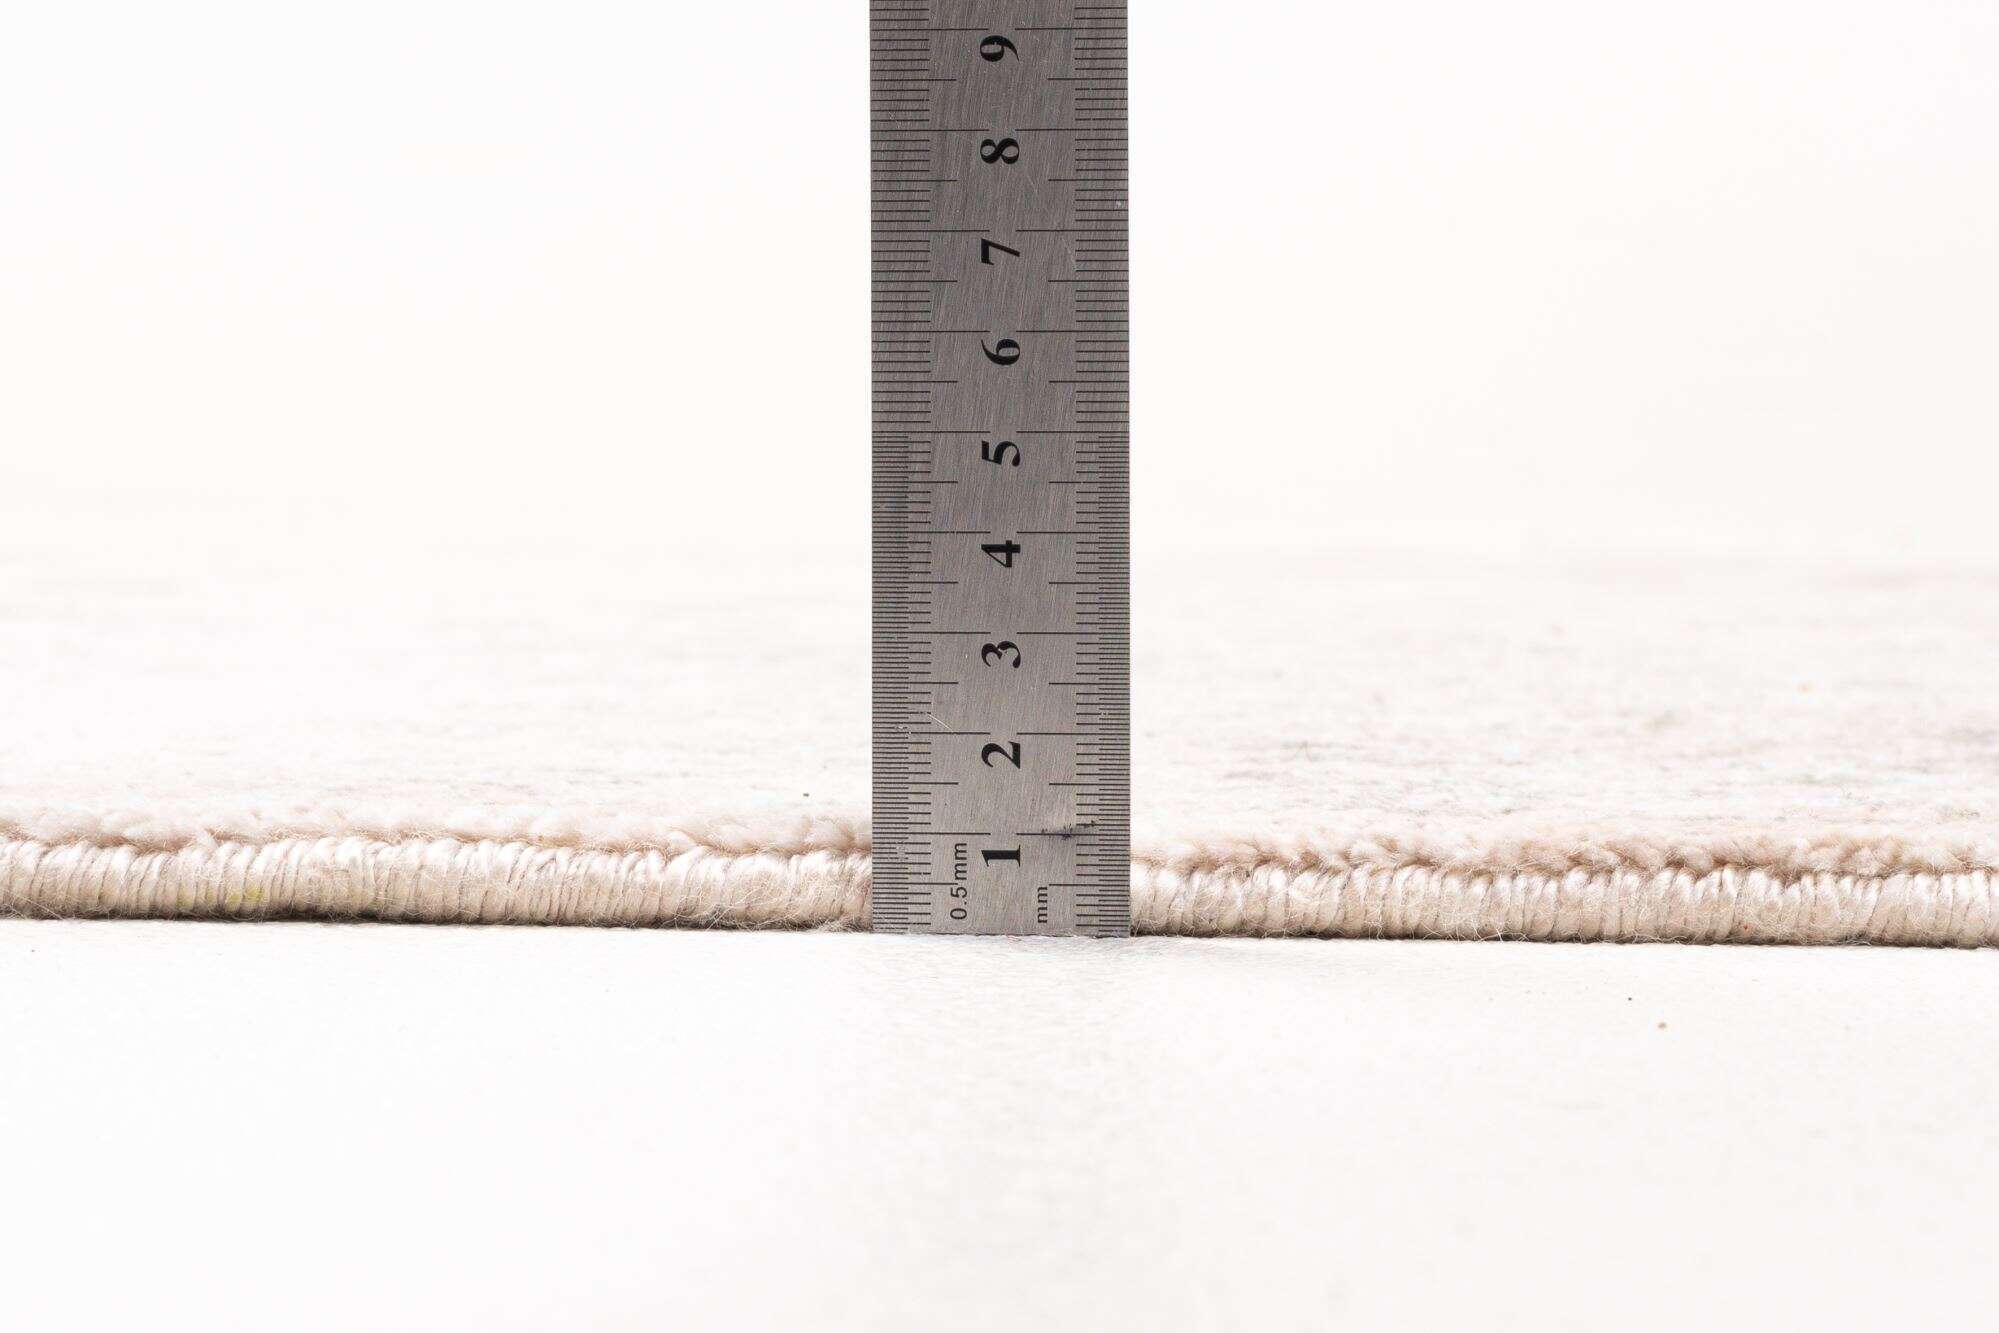 Design Teppich Queensland 170x240cm Handgeknüpft Viskose grau